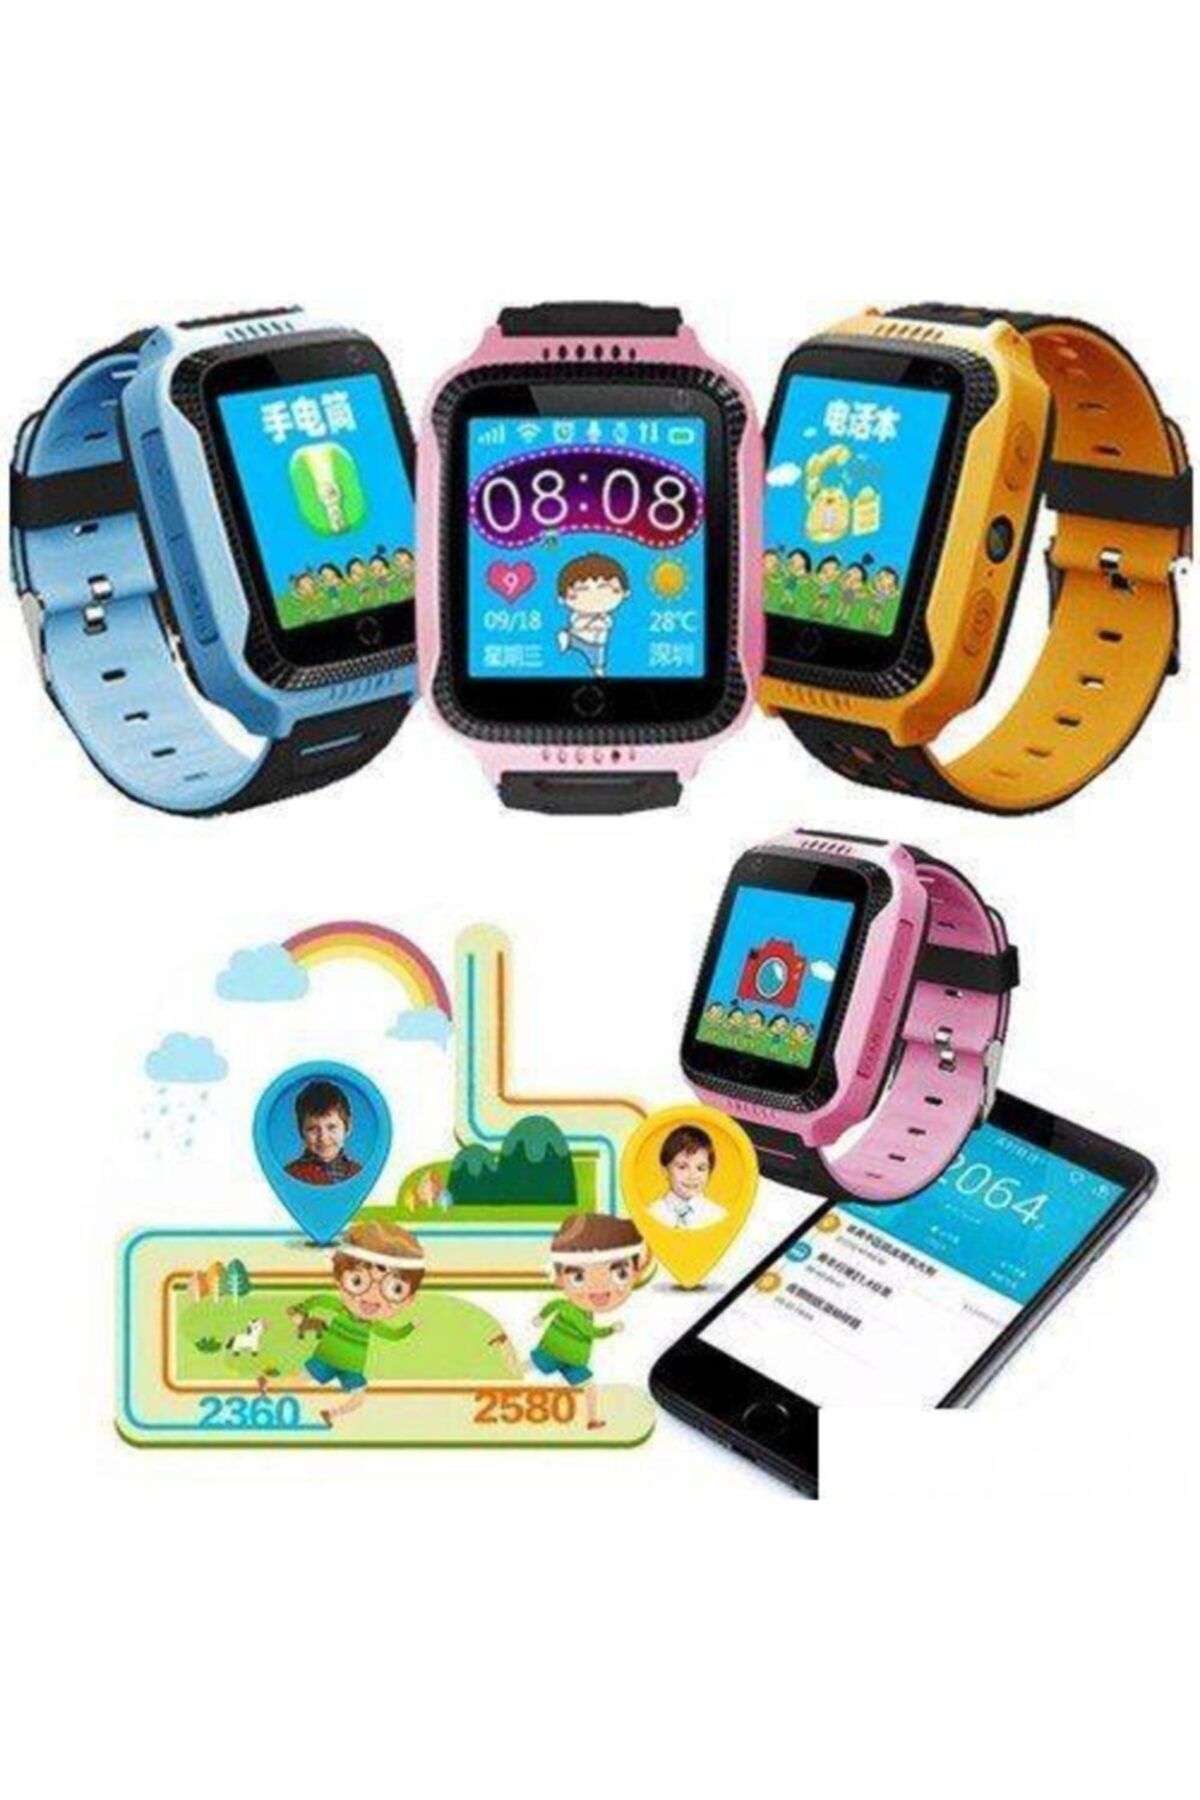 Seven7 Akıllı Saat - Çocuk Takip Saati - Gps - Sim Kartlı Arama- Kameralı